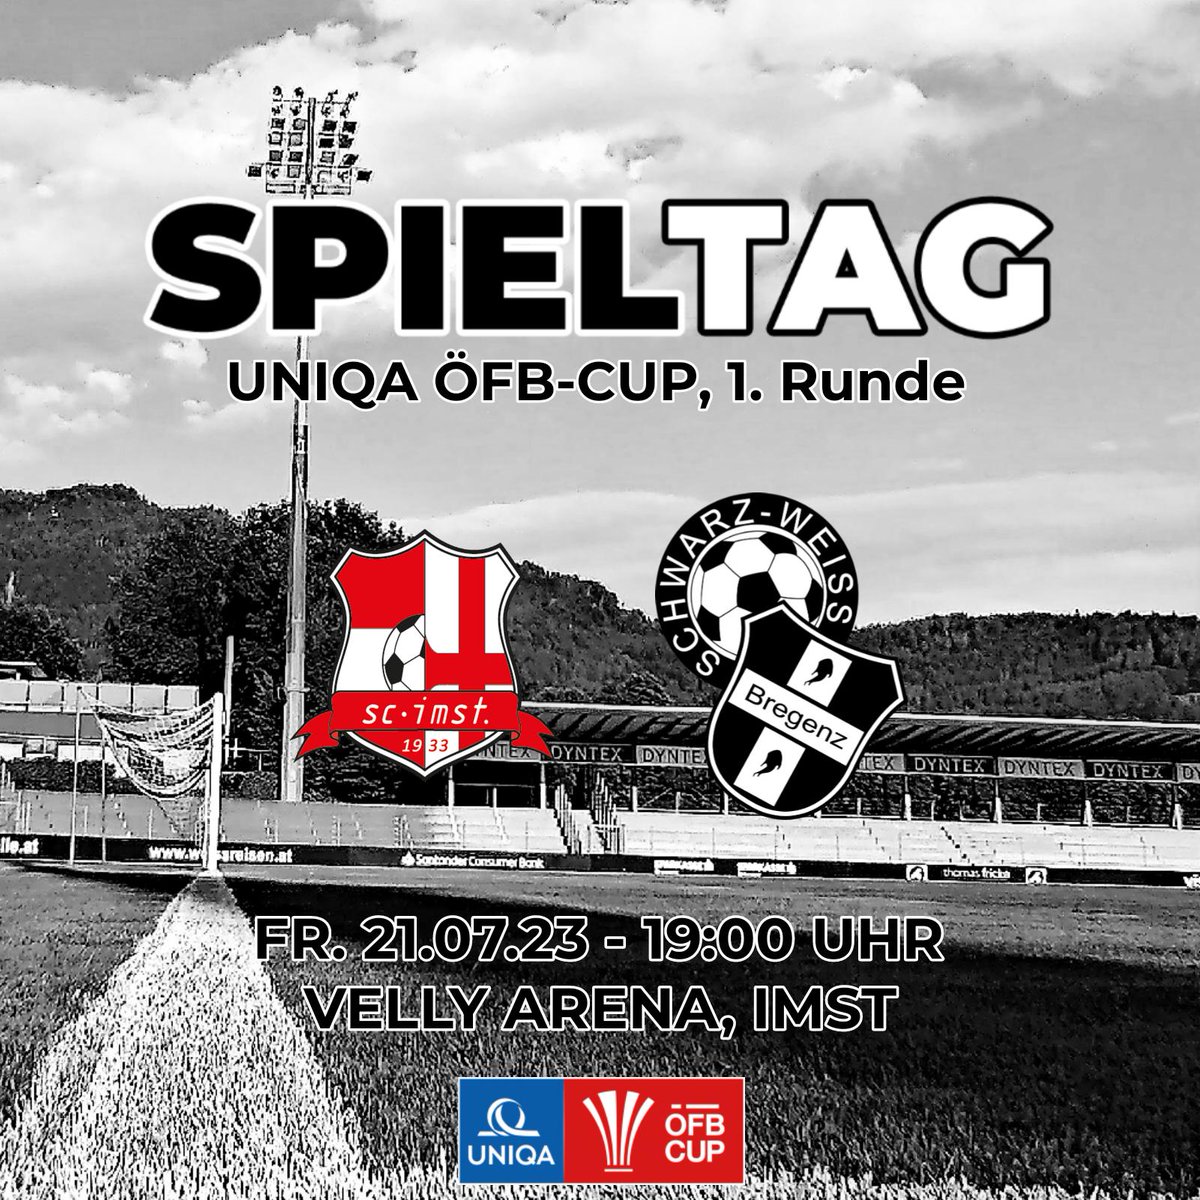 SPIELTAG!

#UNIQAÖFBCUP 1. Runde
#scimst - @swb1919
Fr. 21.07.23 - 19:00 Uhr
Velly Arena, Imst

Cup Auftakt hinterm Arlberg!

sw-bregenz.at/cup-auftakt-hi…

#ImmerWeiterSWB #swbregenz #SWBIMS